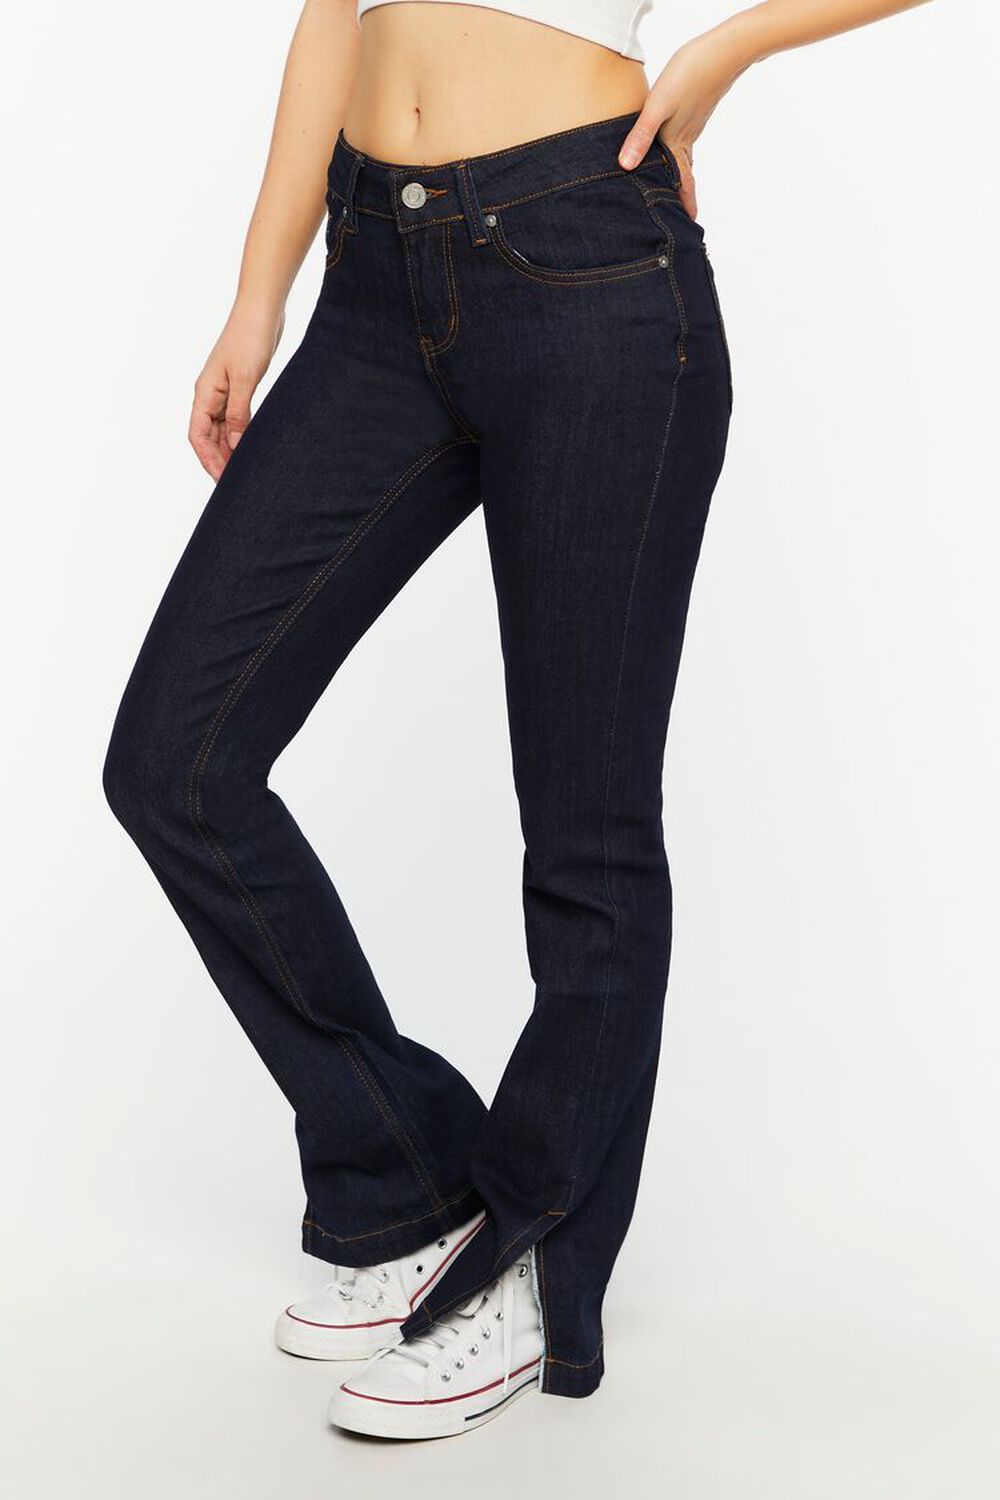 DARK DENIM Split-Hem Slim-Fit Jeans, image 2